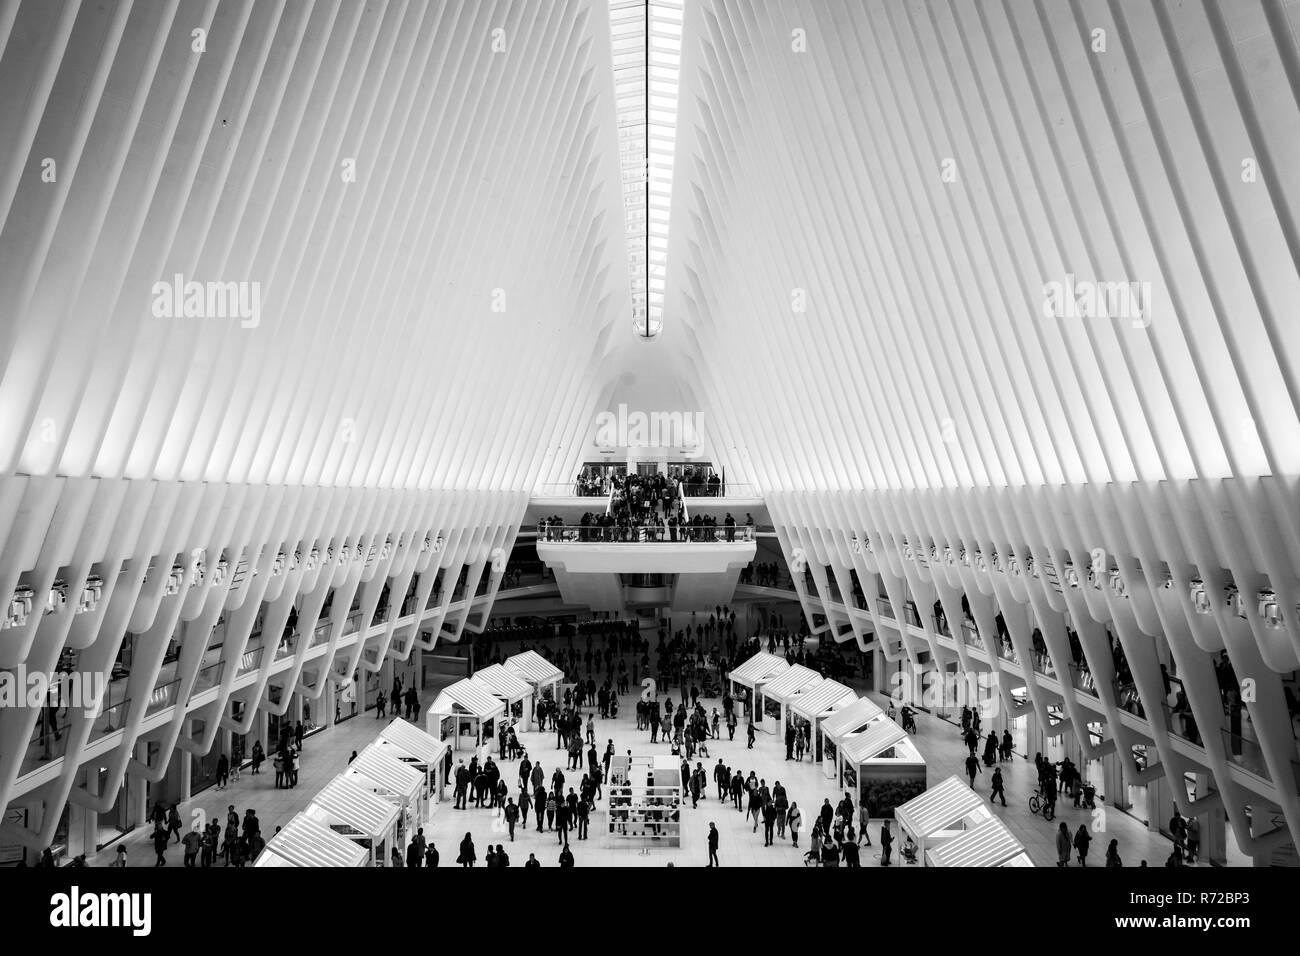 L'intérieur de l'Oculus, au World Trade Center dans le Lower Manhattan, New York City. Banque D'Images